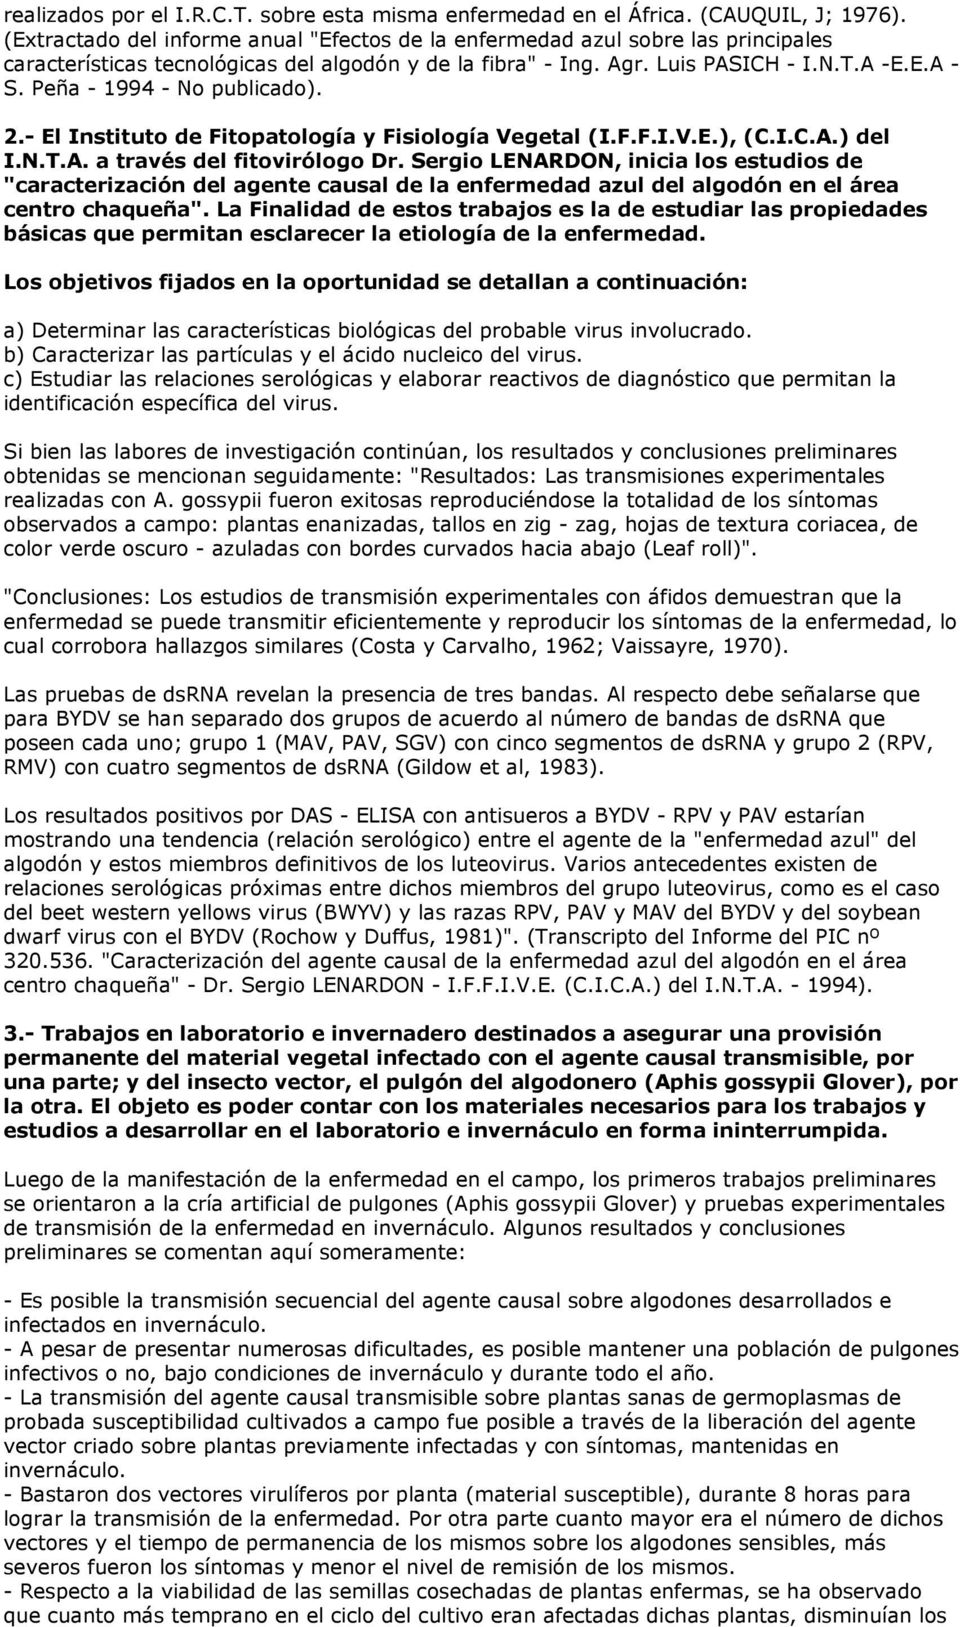 Peña - 1994 - No publicado). 2.- El Instituto de Fitopatología y Fisiología Vegetal (I.F.F.I.V.E.), (C.I.C.A.) del I.N.T.A. a través del fitovirólogo Dr.